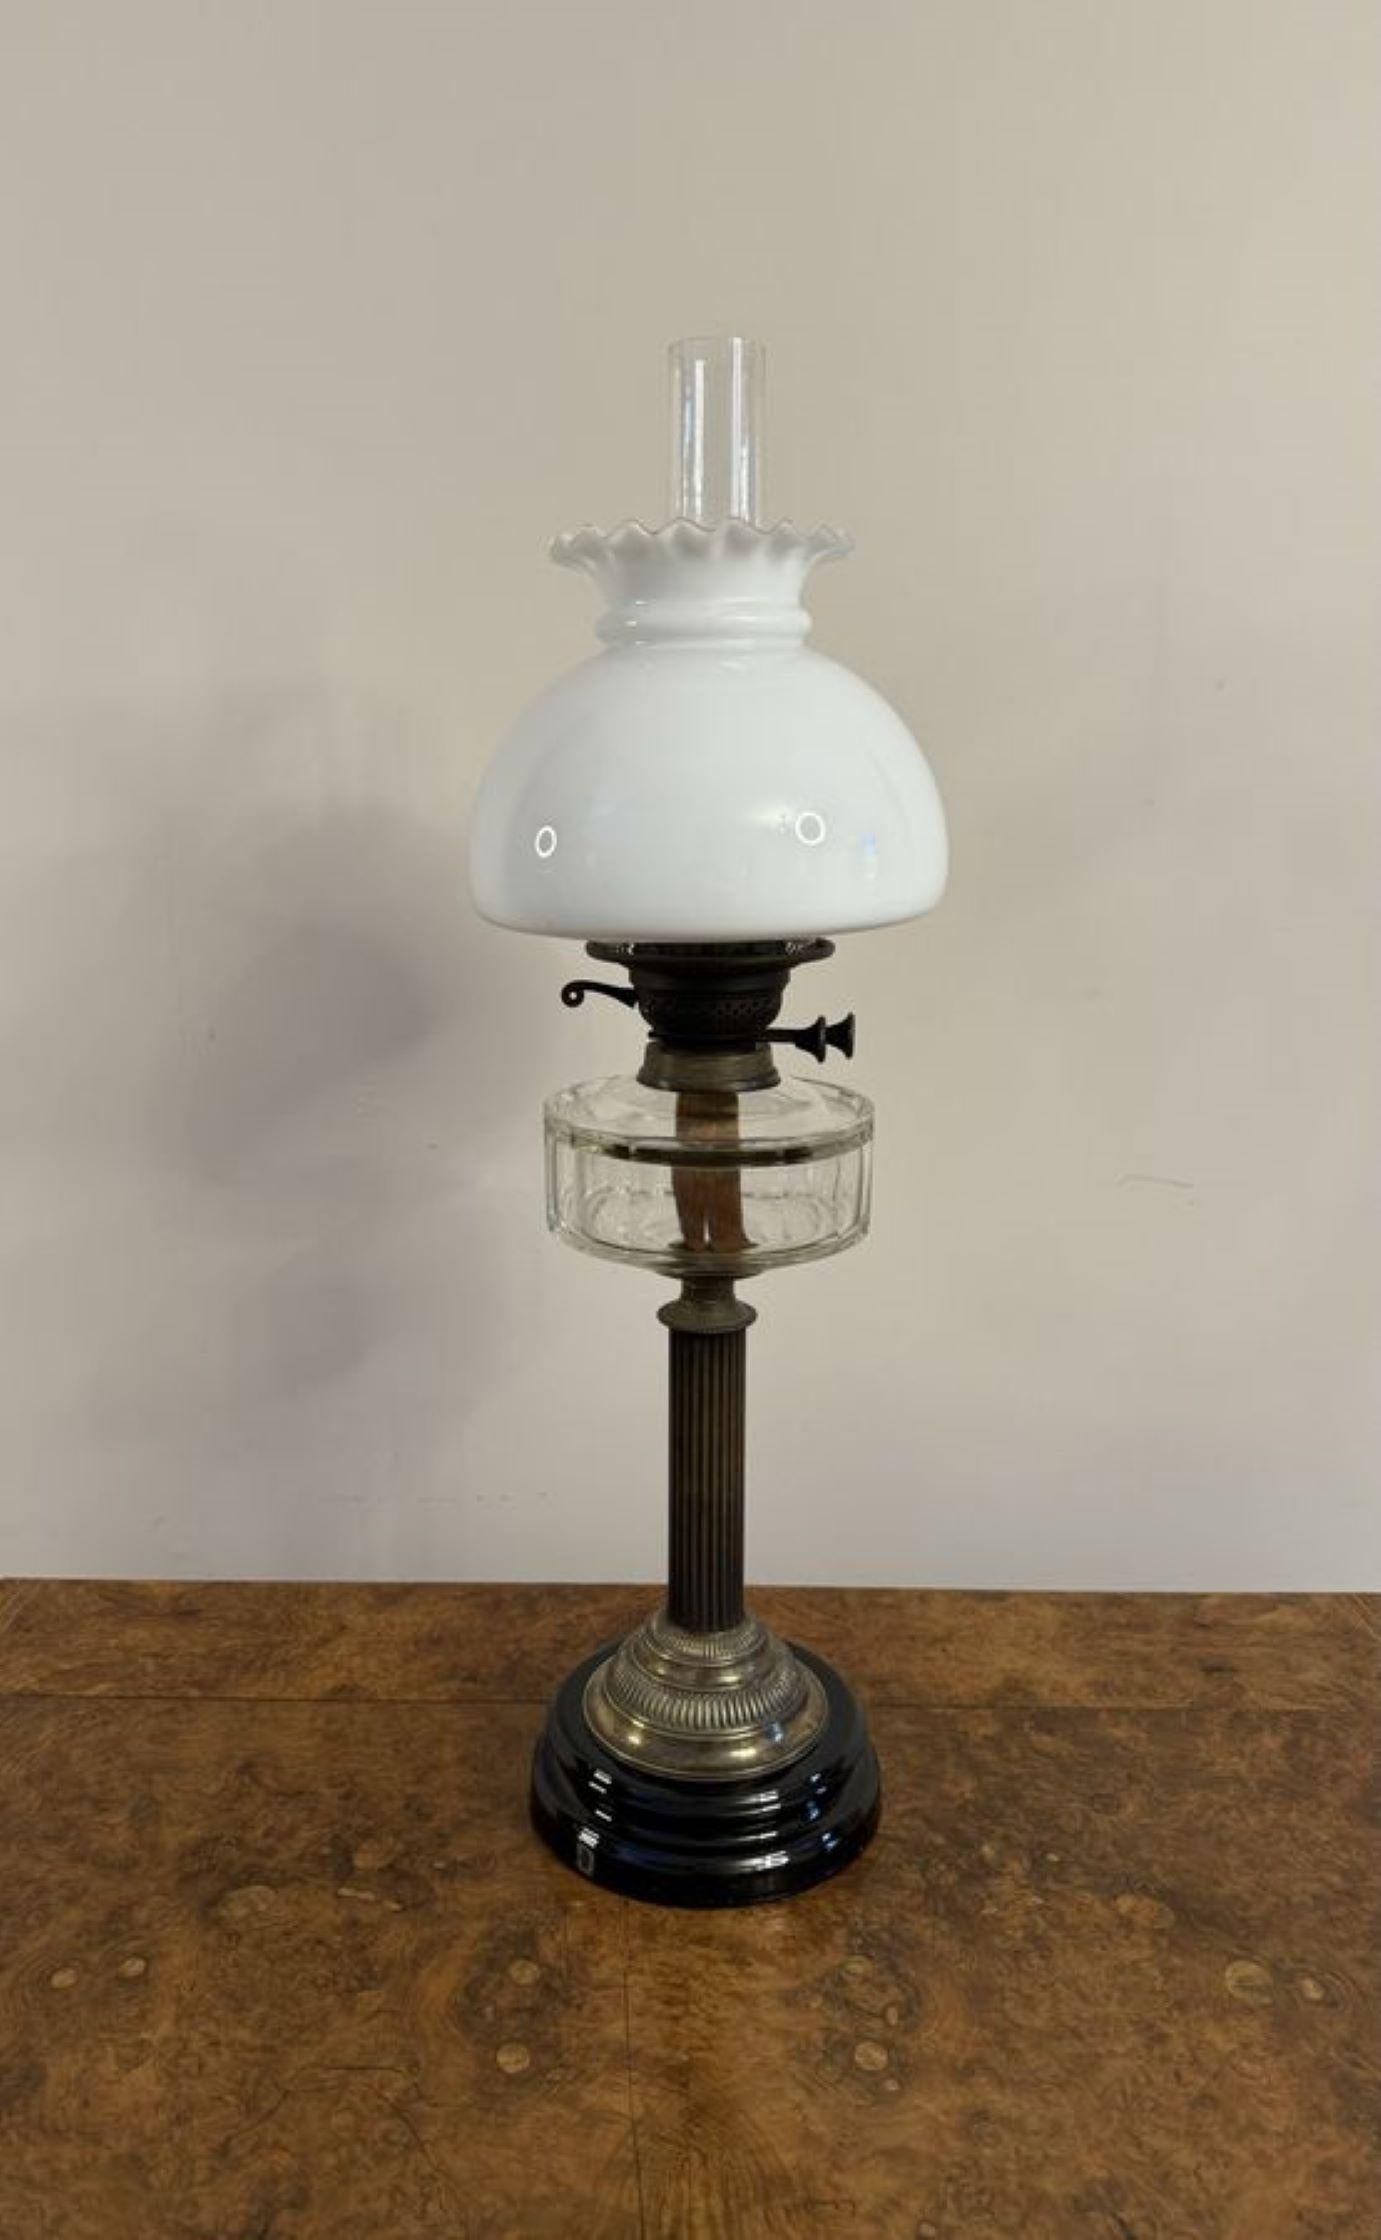 Merveilleuse lampe à huile victorienne ancienne, avec l'abat-jour en verre opaque d'origine à bord frangé, une cheminée en verre, au-dessus d'un brûleur en laiton et d'une fonte en verre clair, soutenue par une colonne en bois au-dessus d'une base